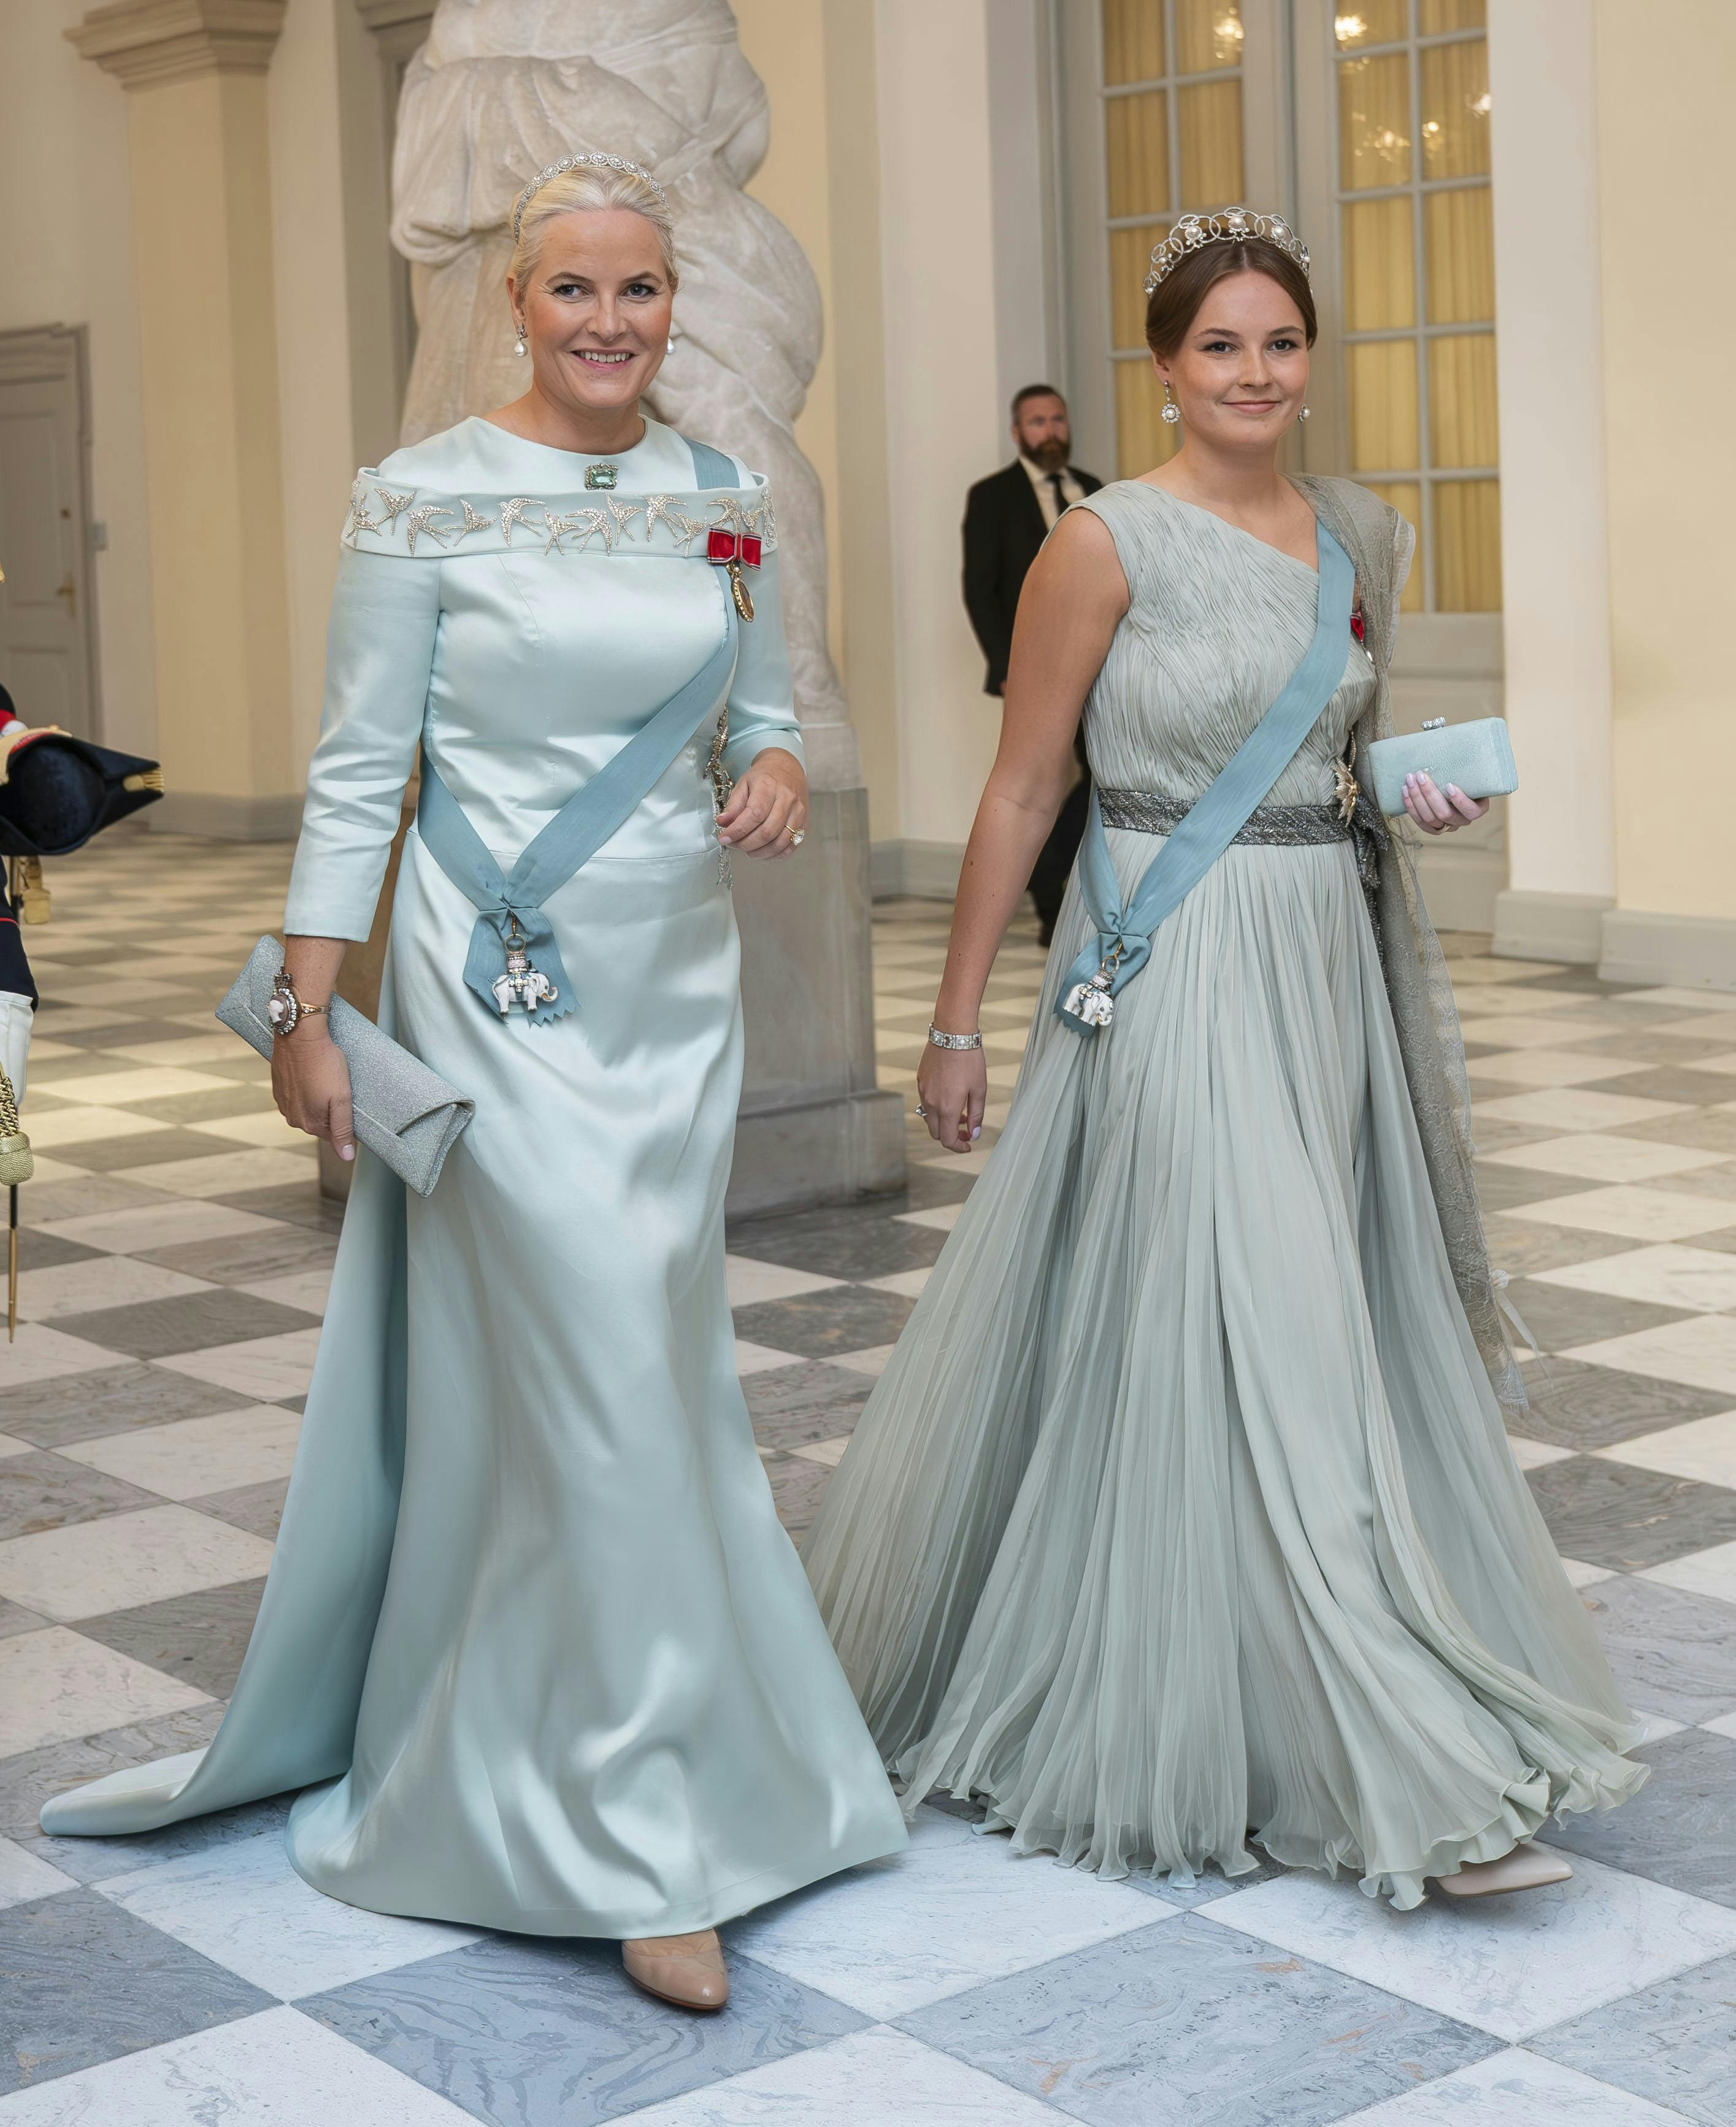 Kronprinsesse Mette-Marit og prinsesse Ingrid Alexandra repræsenterede sammen med kronprins Haakon det norske kongehus til prins Christians 18-års fødselsdag.